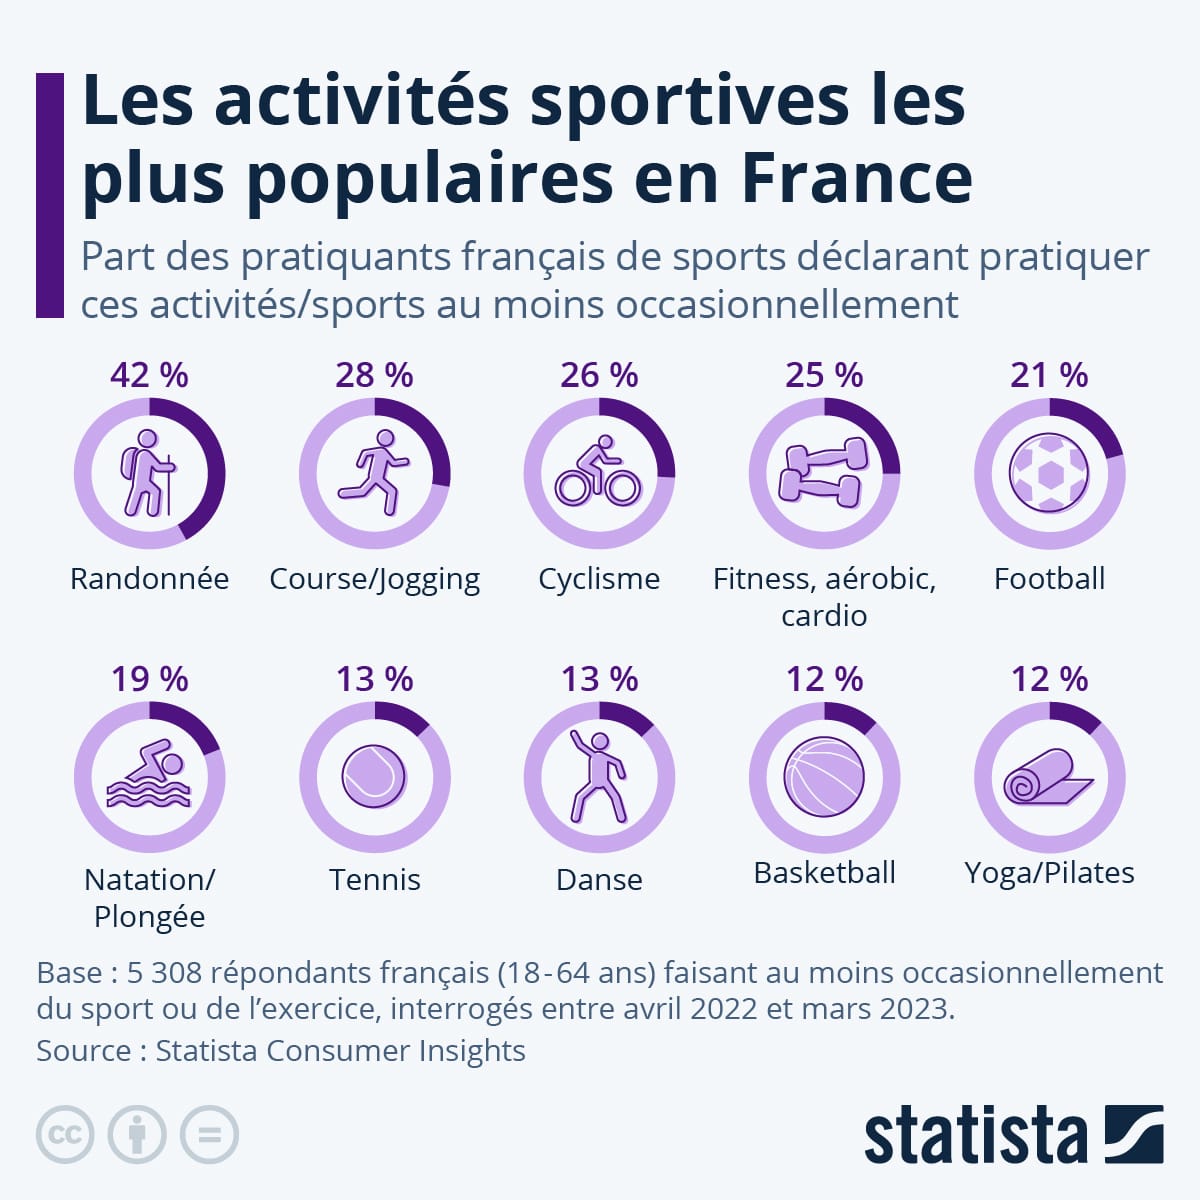 Les activités sportives préférées des Français